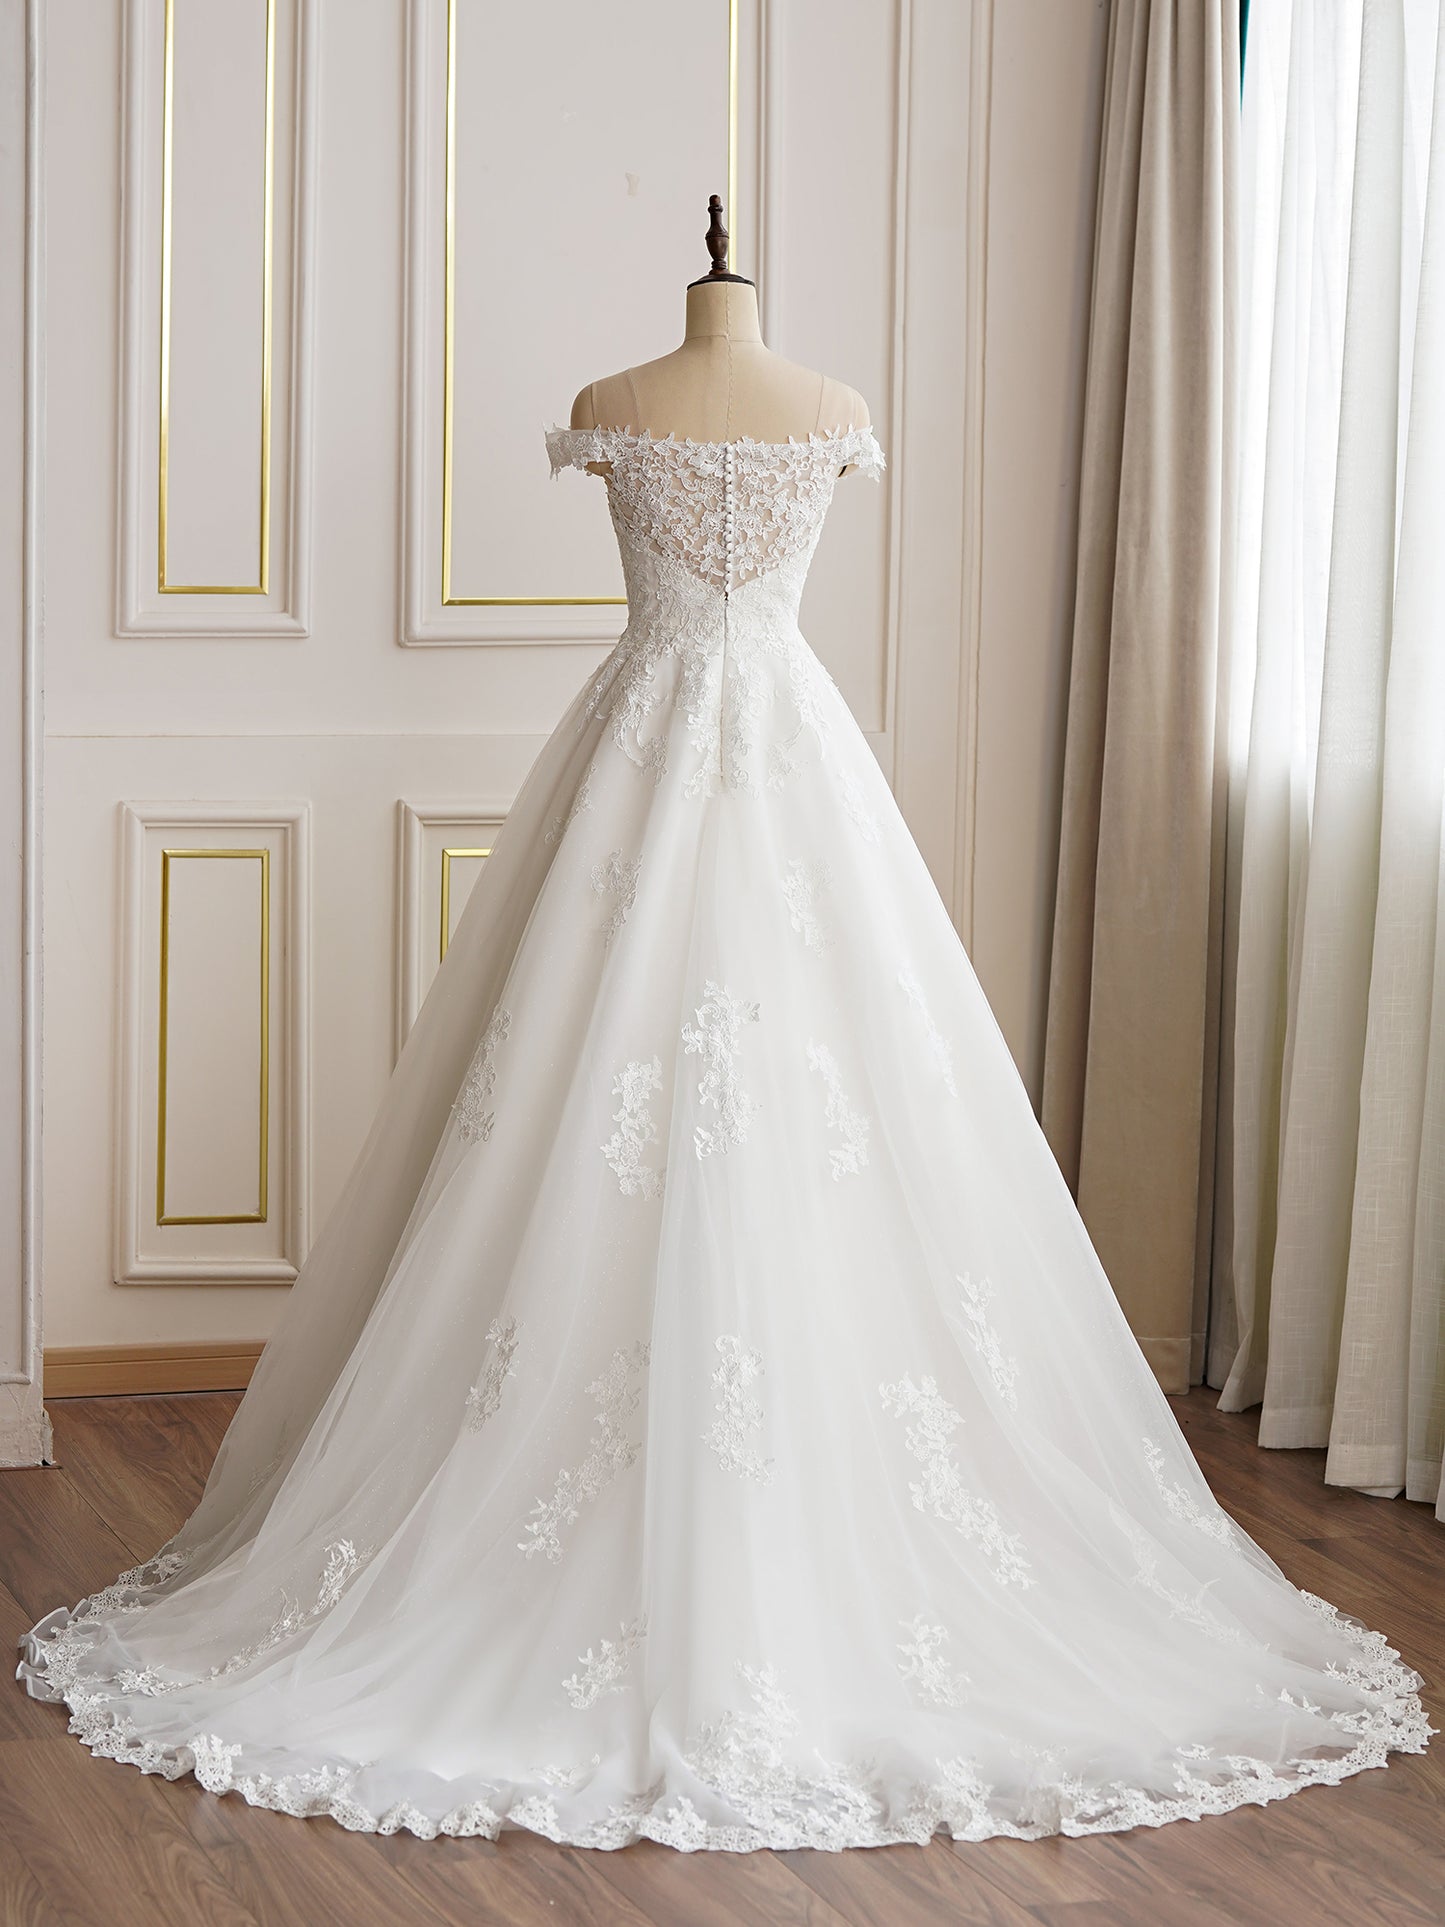 Aurora 2827 - Classic A-Line Princess Wedding Dress